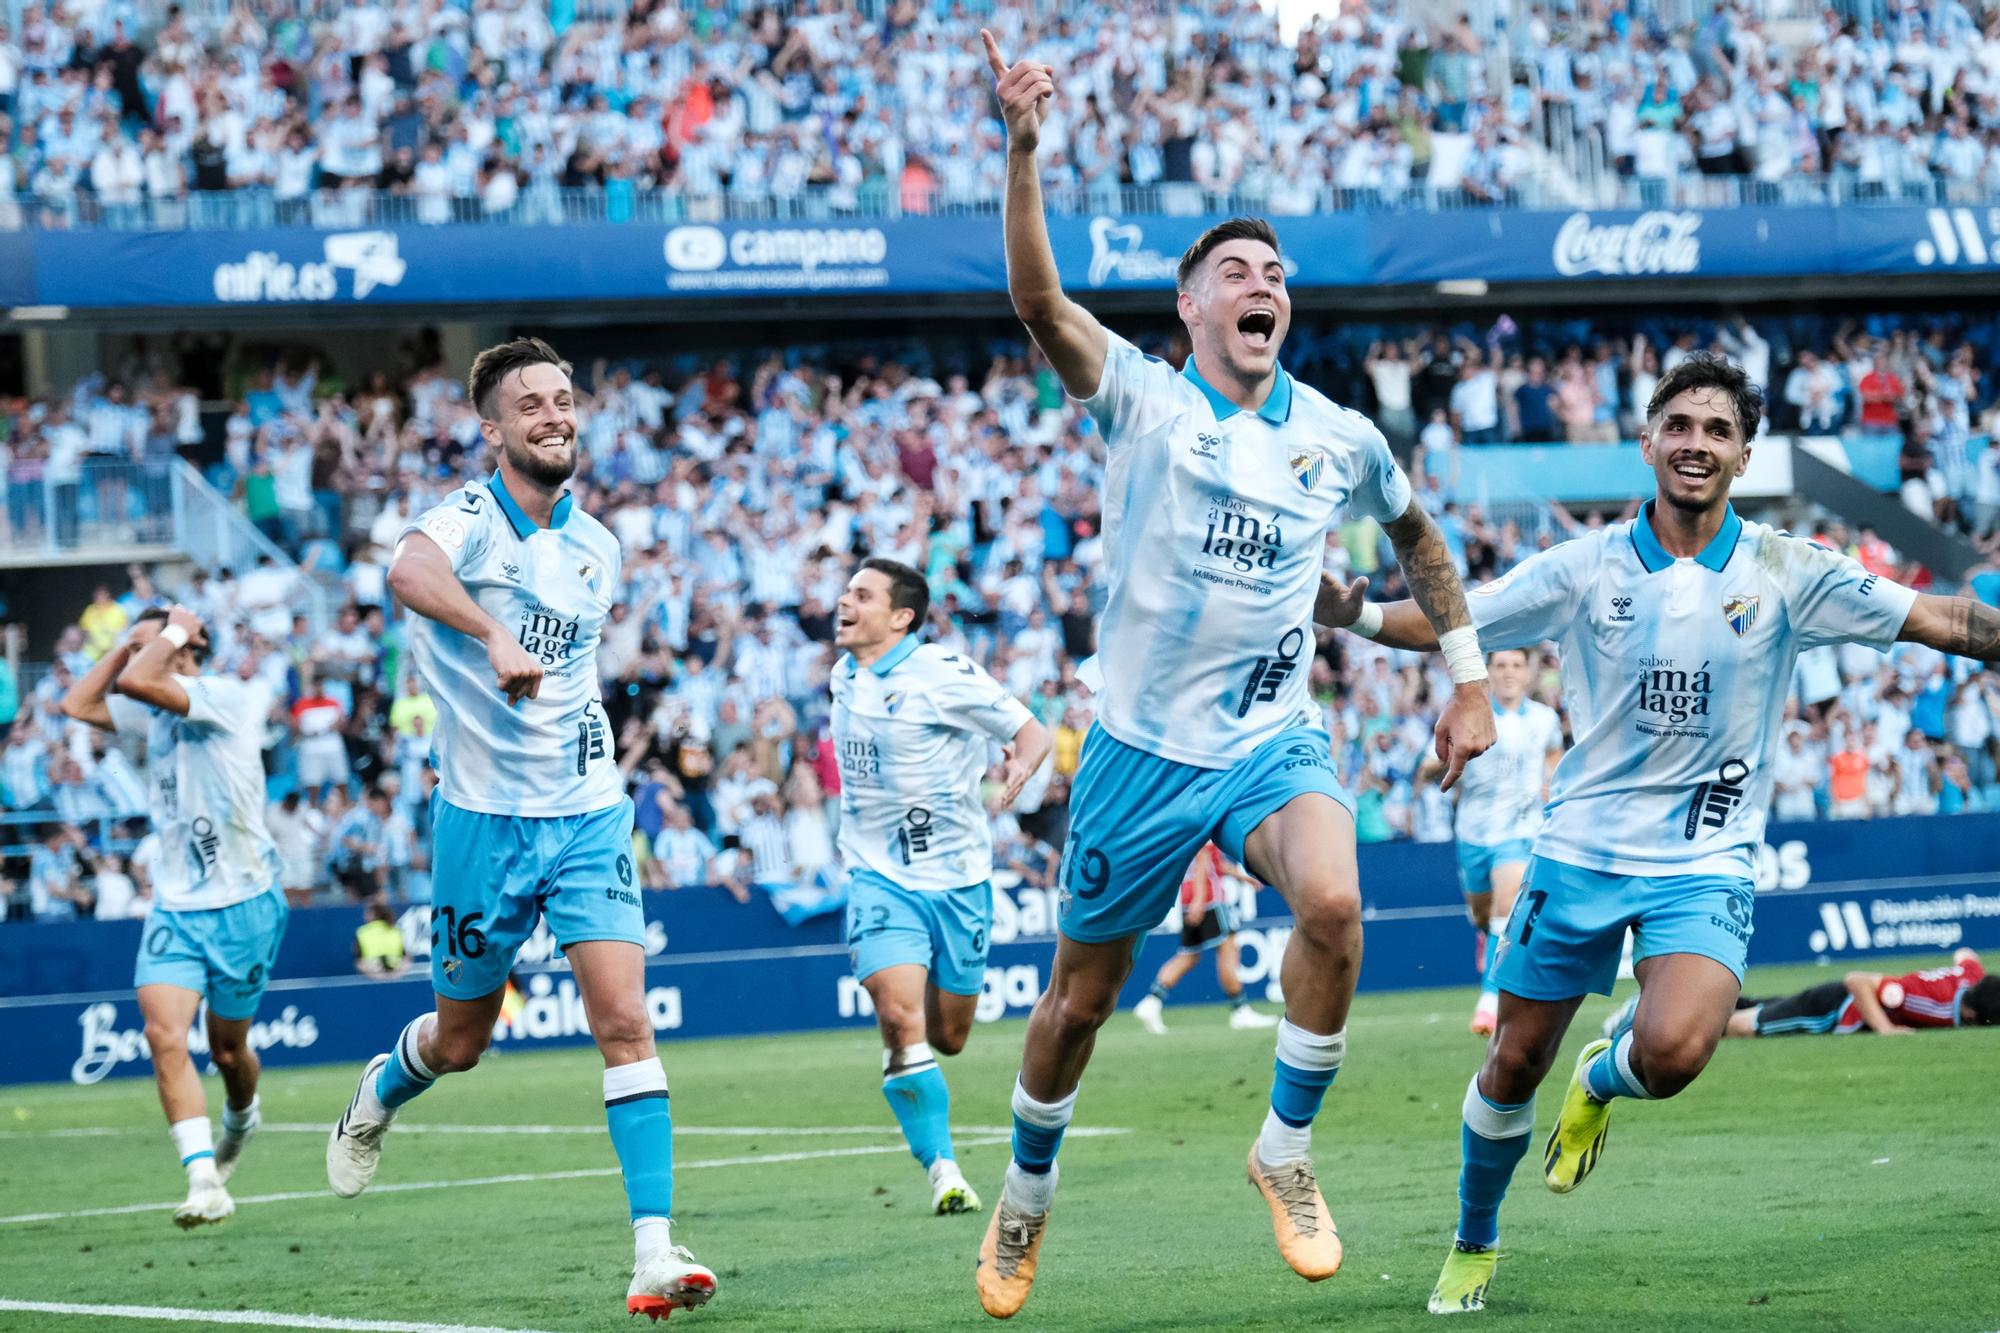 Partido de vuelta de la semifinal del play off de ascenso a Segunda División entre el Málaga CF y el Celta Fortuna